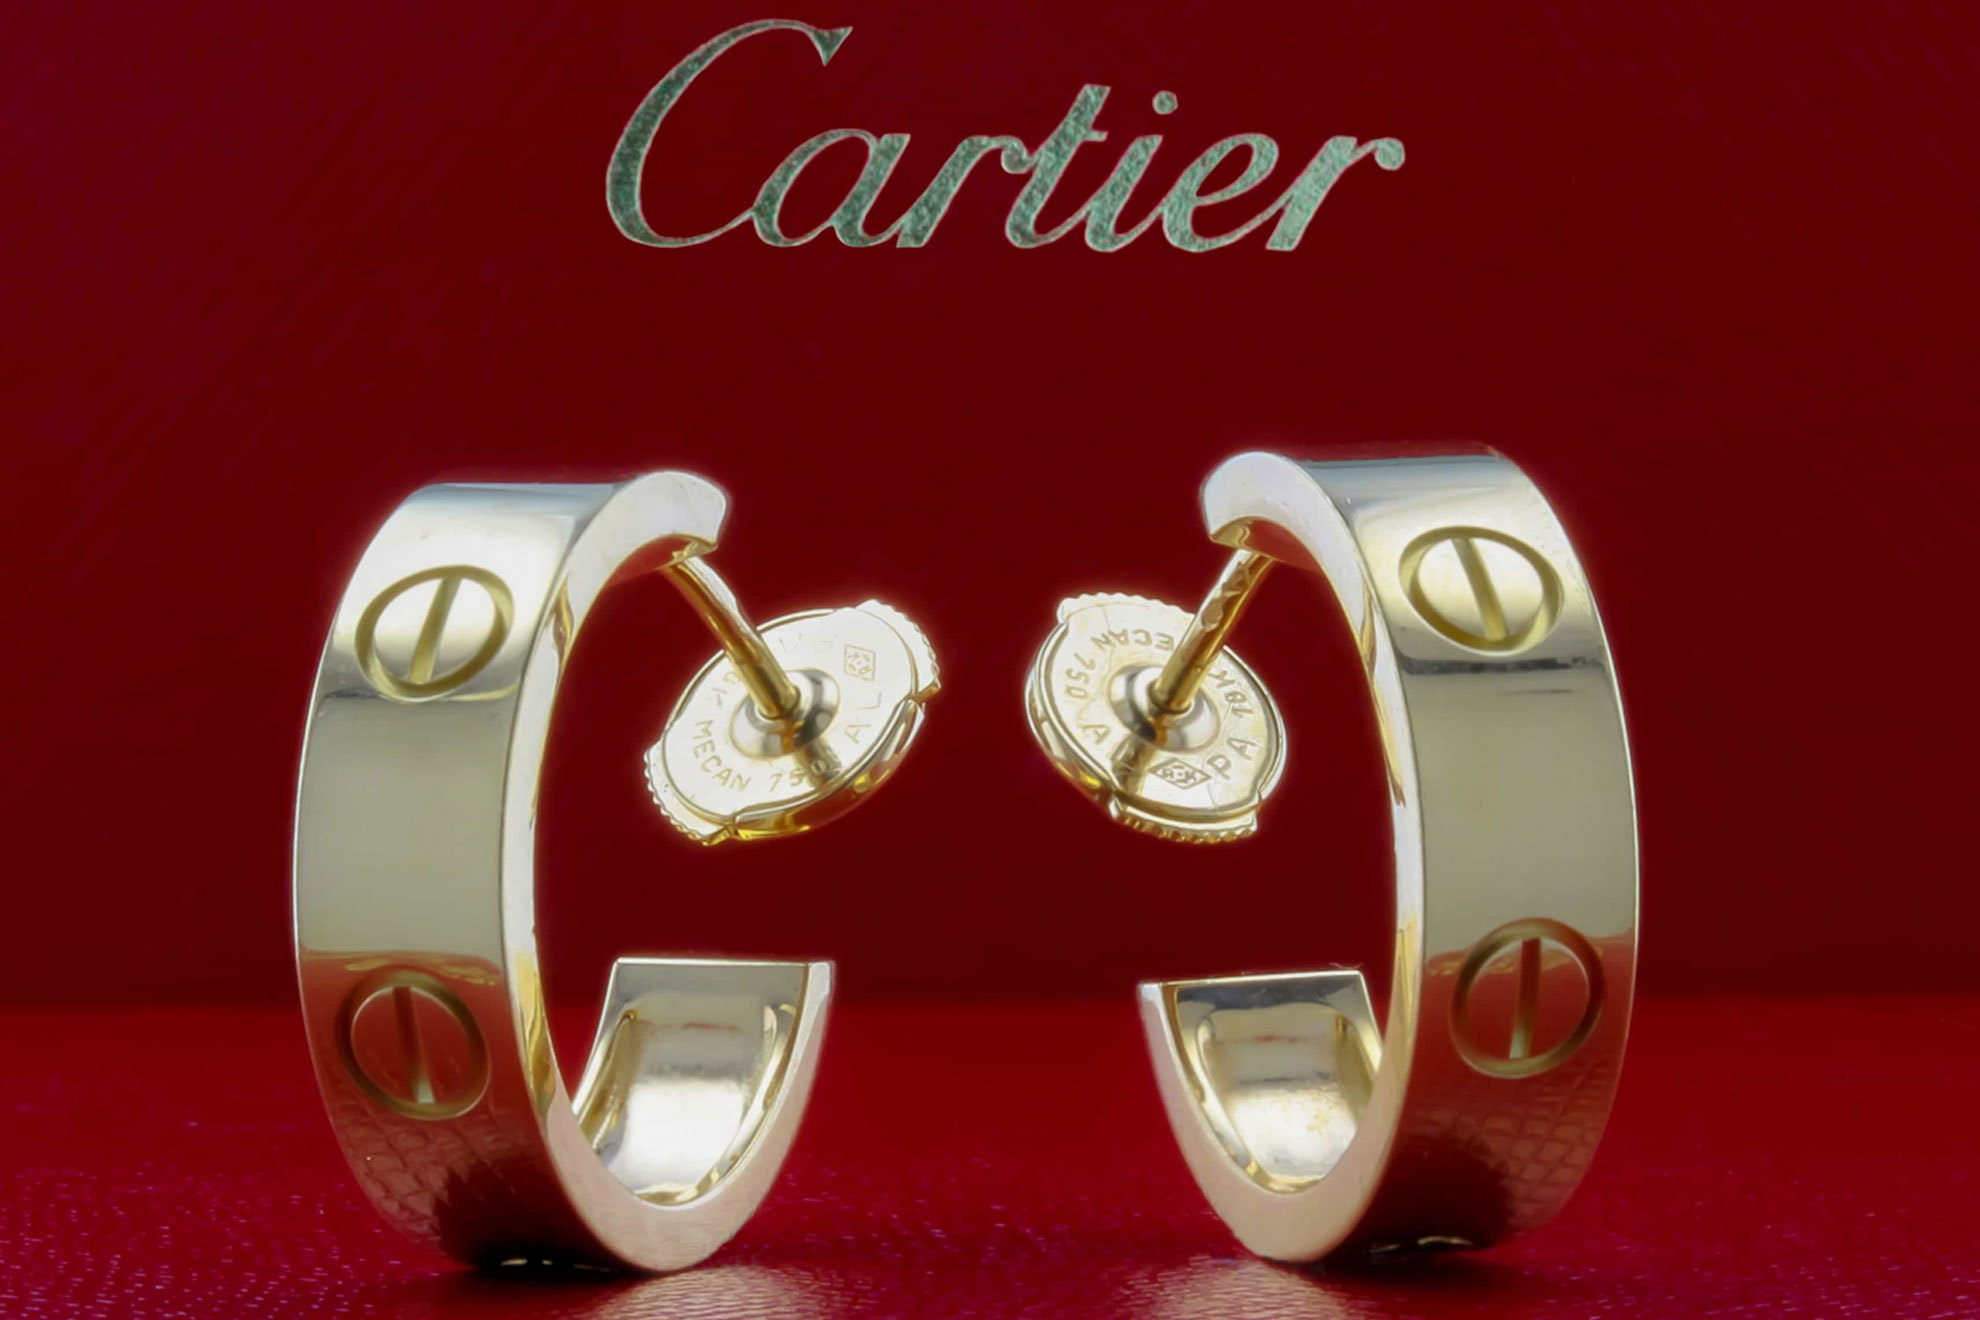 Un fallo de Cartier permite que un cliente compre dos pares de pendientes de diamantes por 13 euros